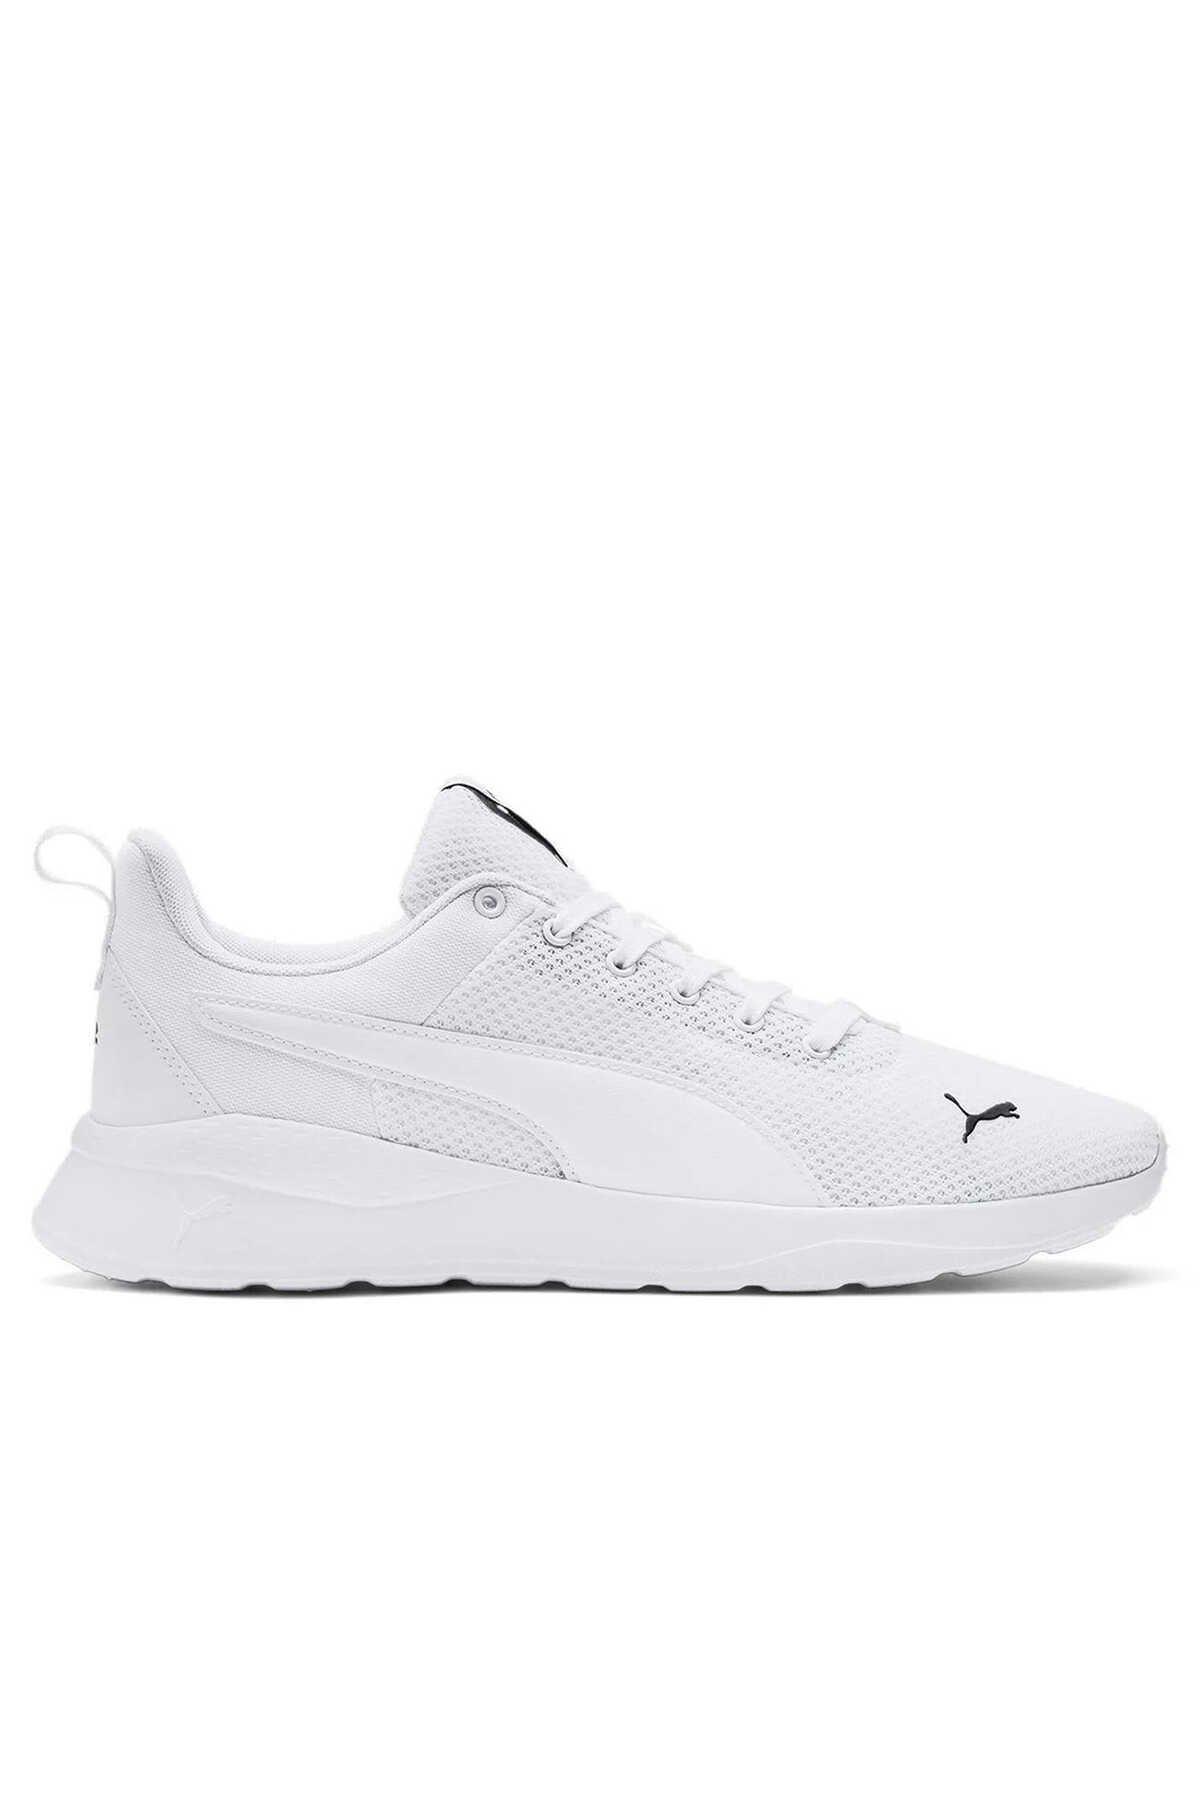 Puma - Puma Anzarun Lite Erkek Sneaker Ayakkabı Beyaz